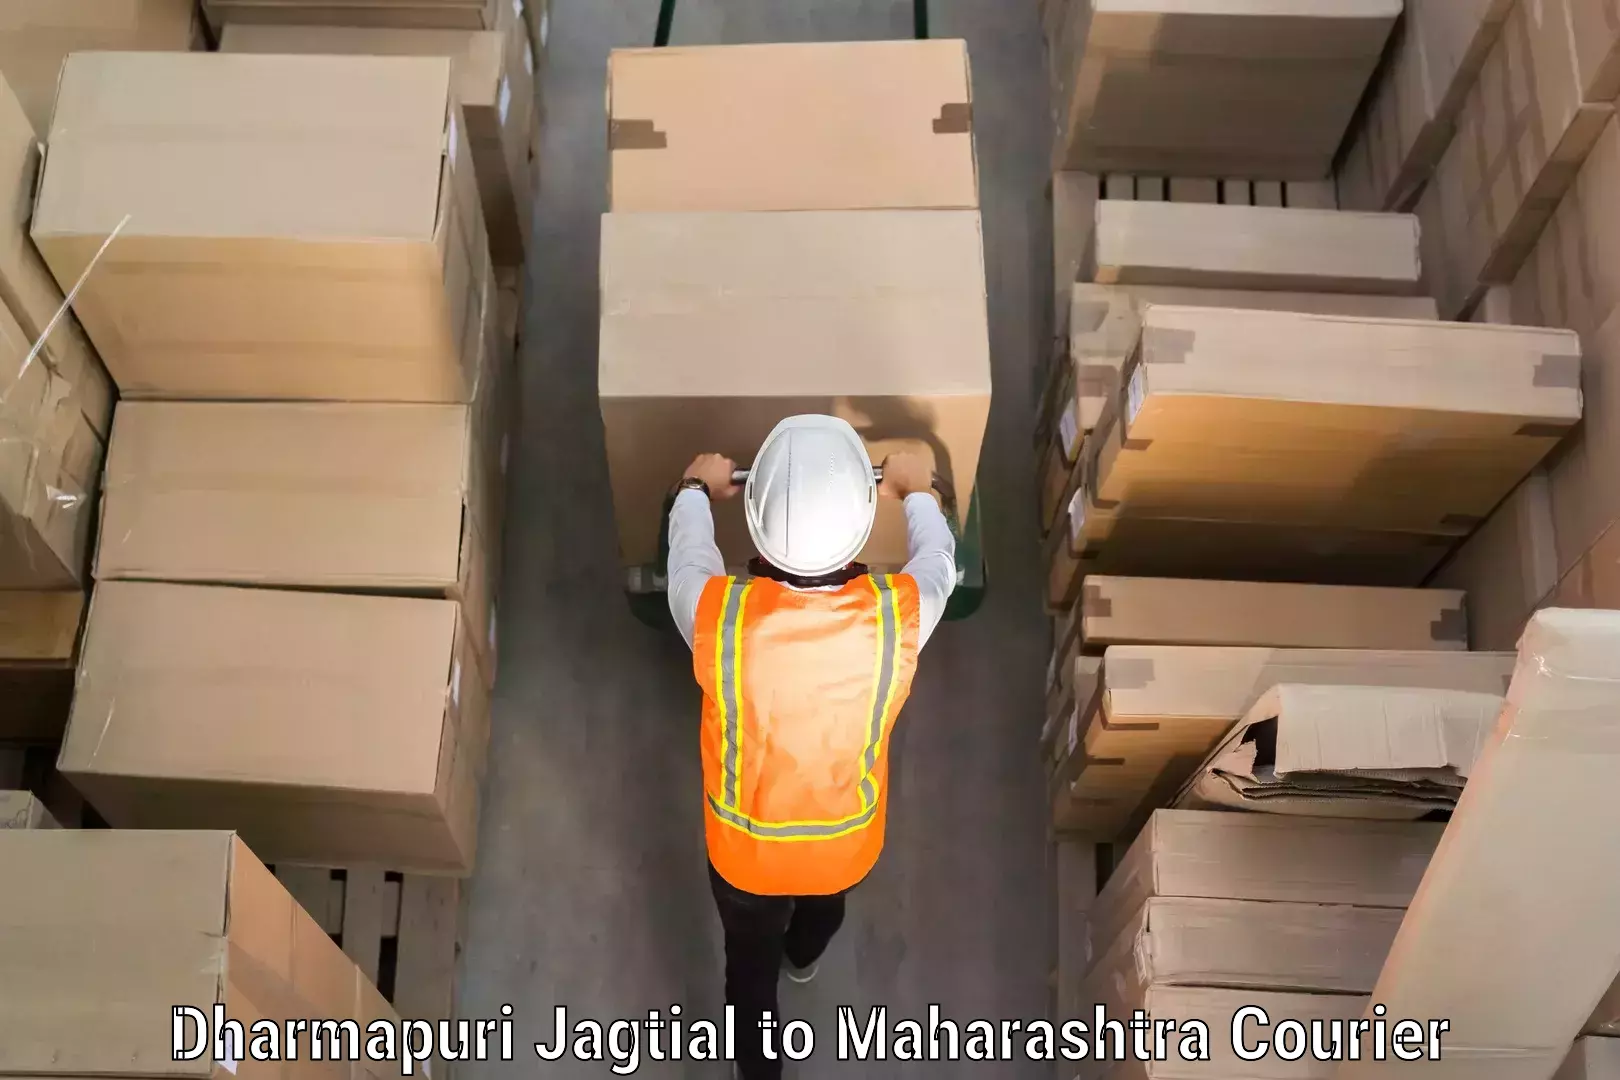 High-quality baggage shipment Dharmapuri Jagtial to Atpadi